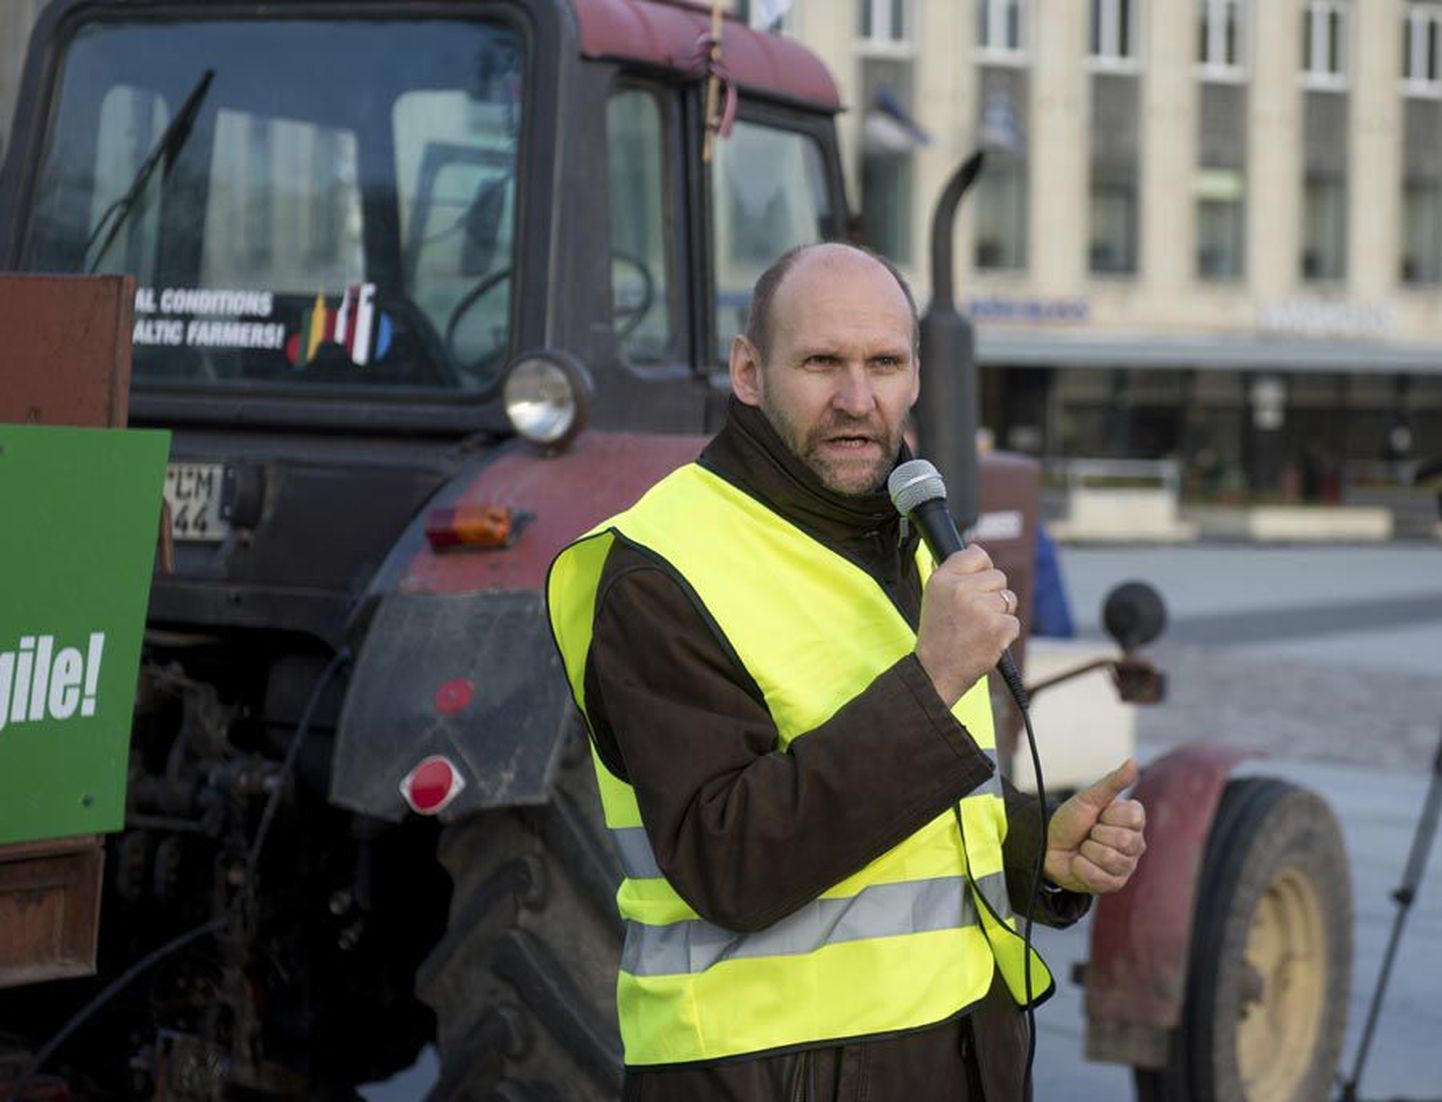 Põllumajandusminister Helir-Valdor Seeder saatis eile põllumeeste traktorit nii Tallinnas kui Viljandis ning kiitis Balti põllumehi ühiselt tegutsemise eest.